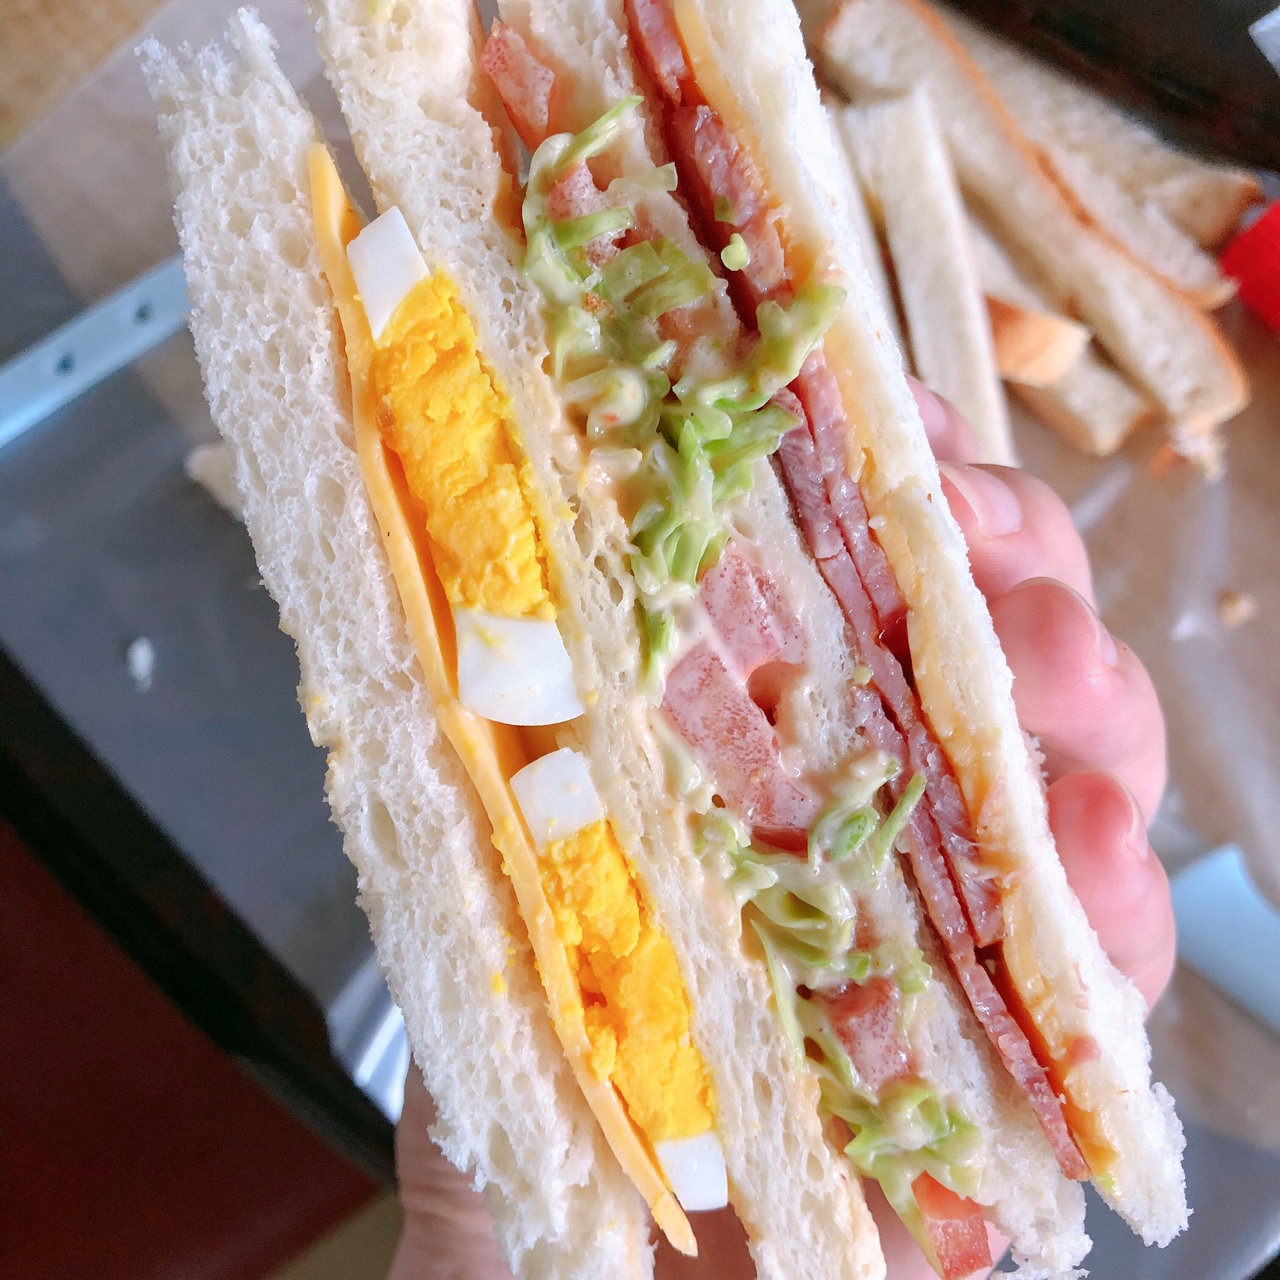 减肥最爱三明治